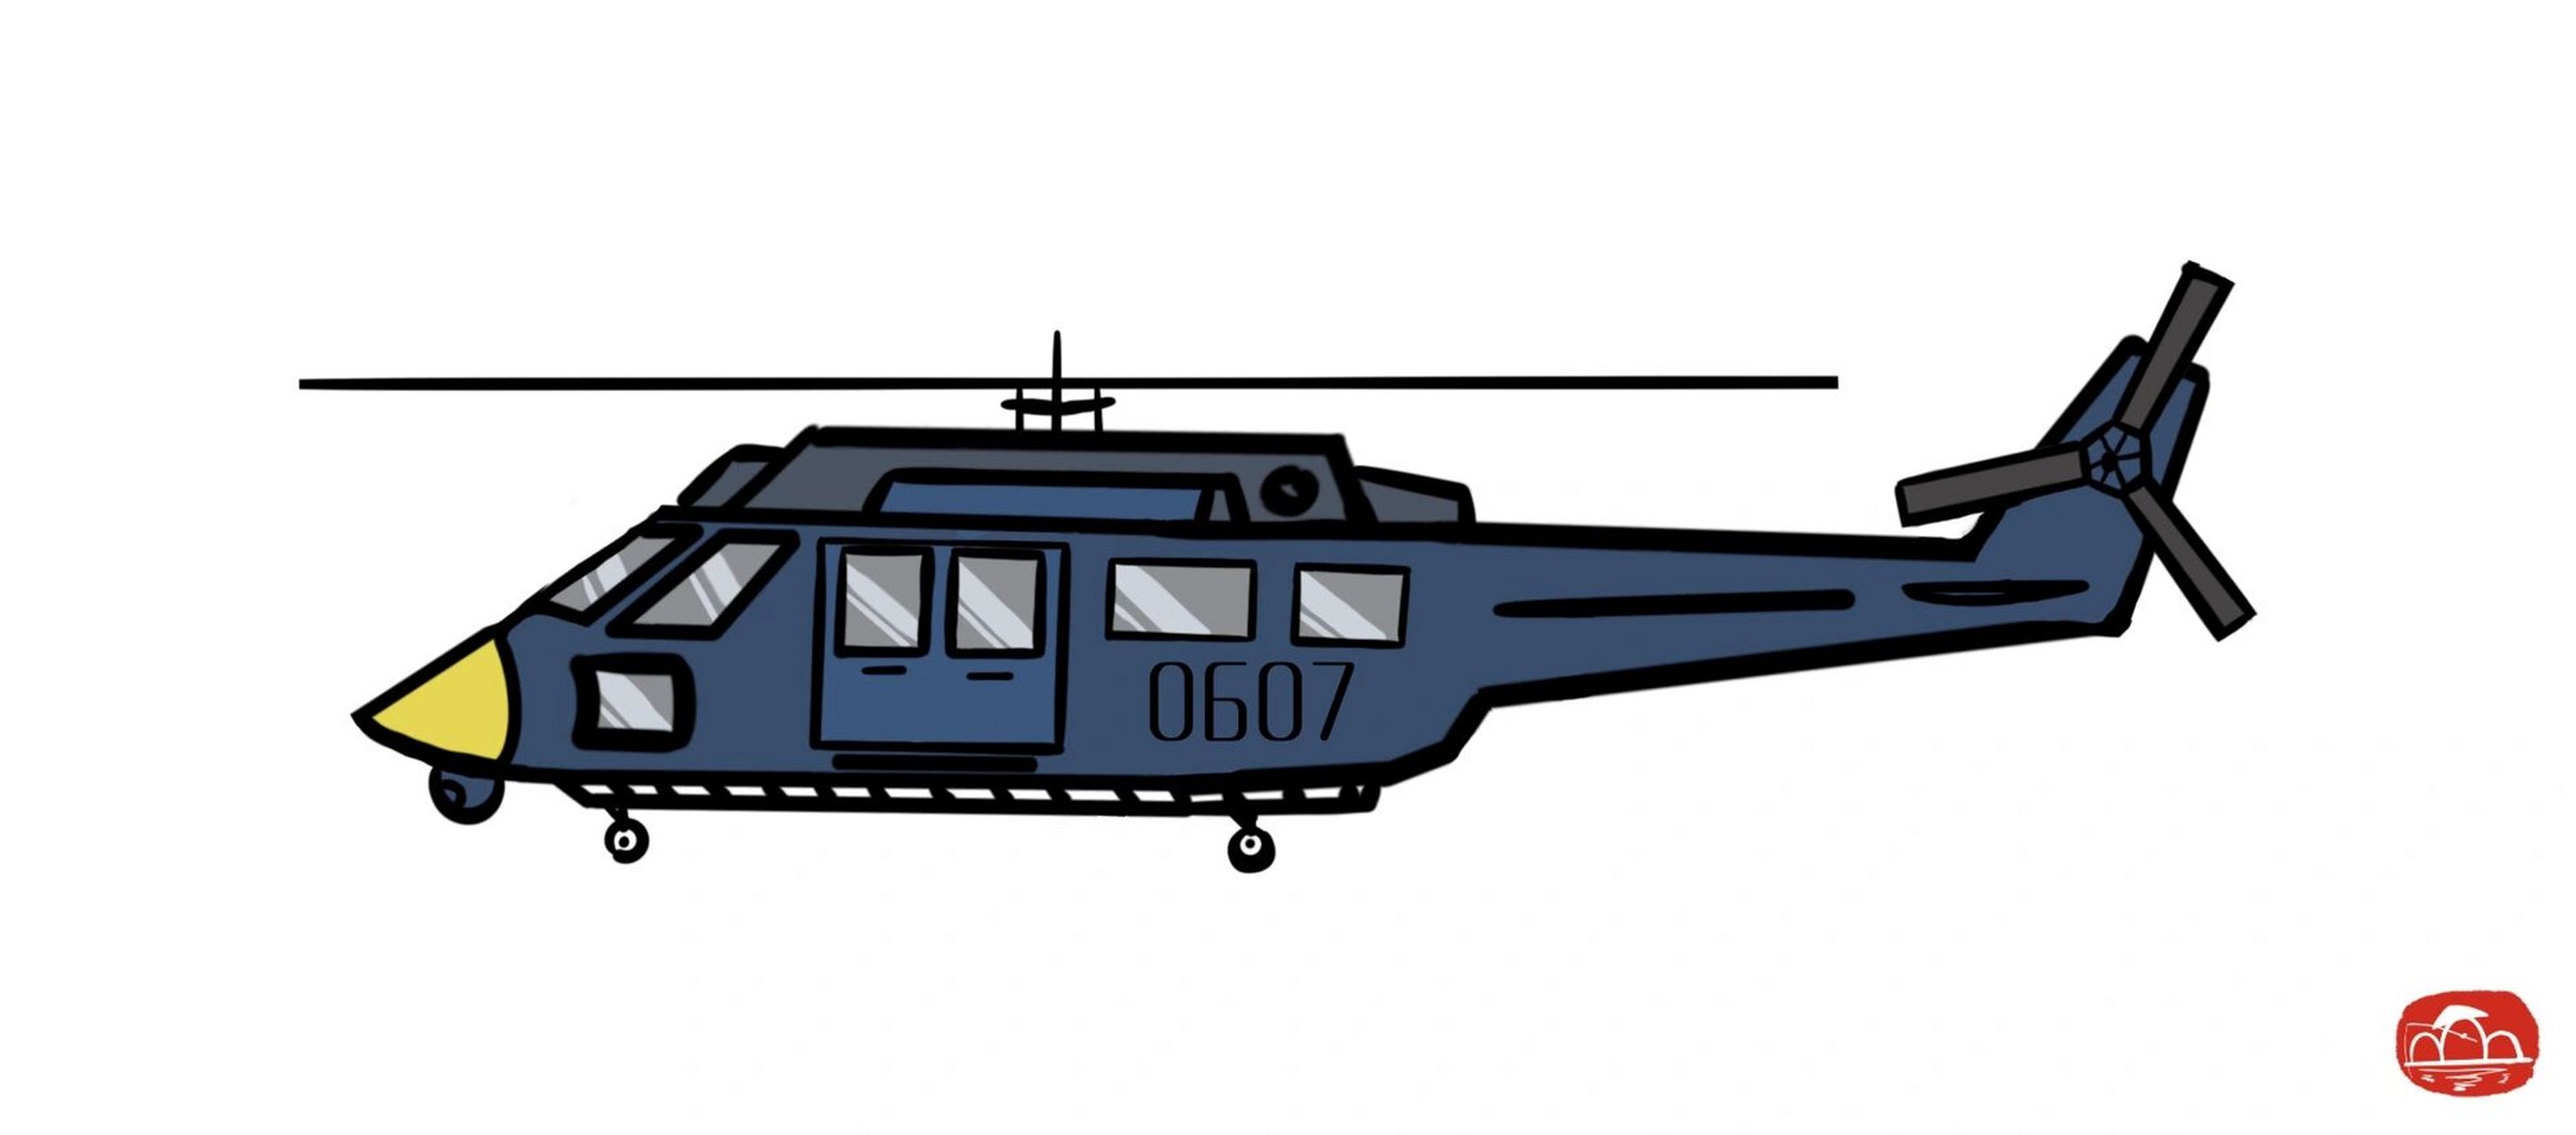 武装直升机简笔画军用图片